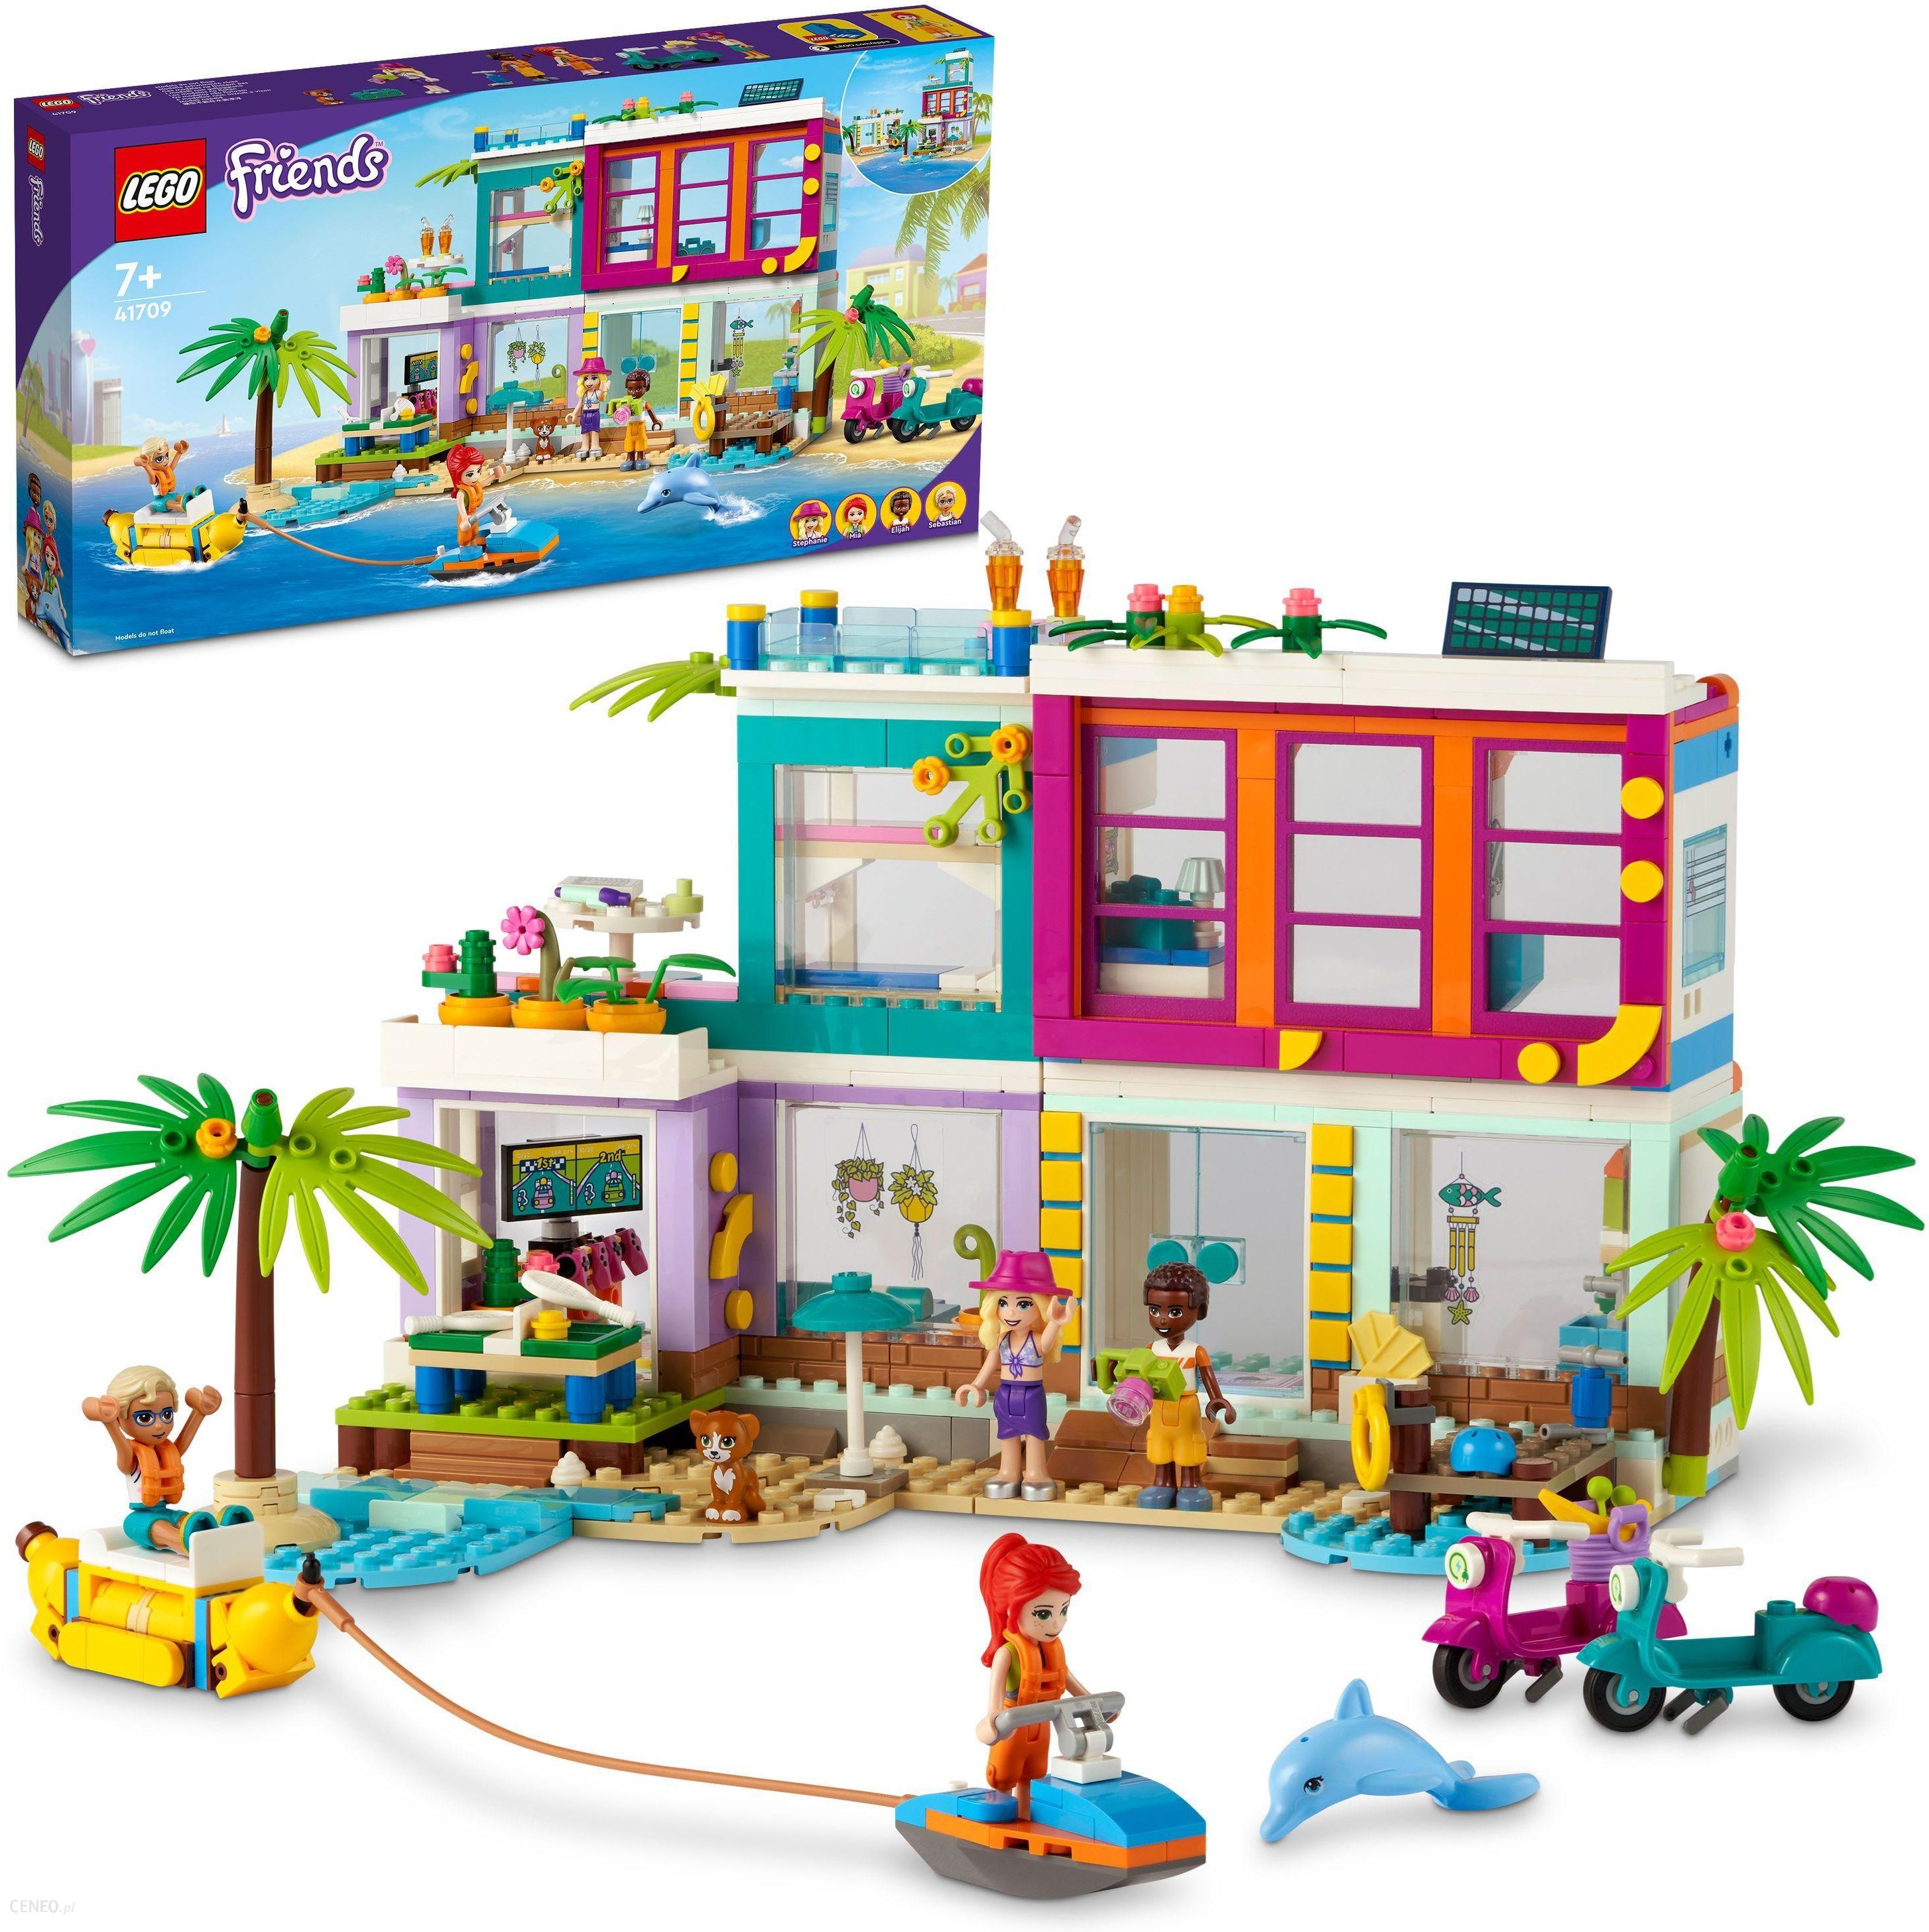 Betjene Microbe alene LEGO Friends 41709 Wakacyjny domek na plaży - ceny i opinie - Ceneo.pl